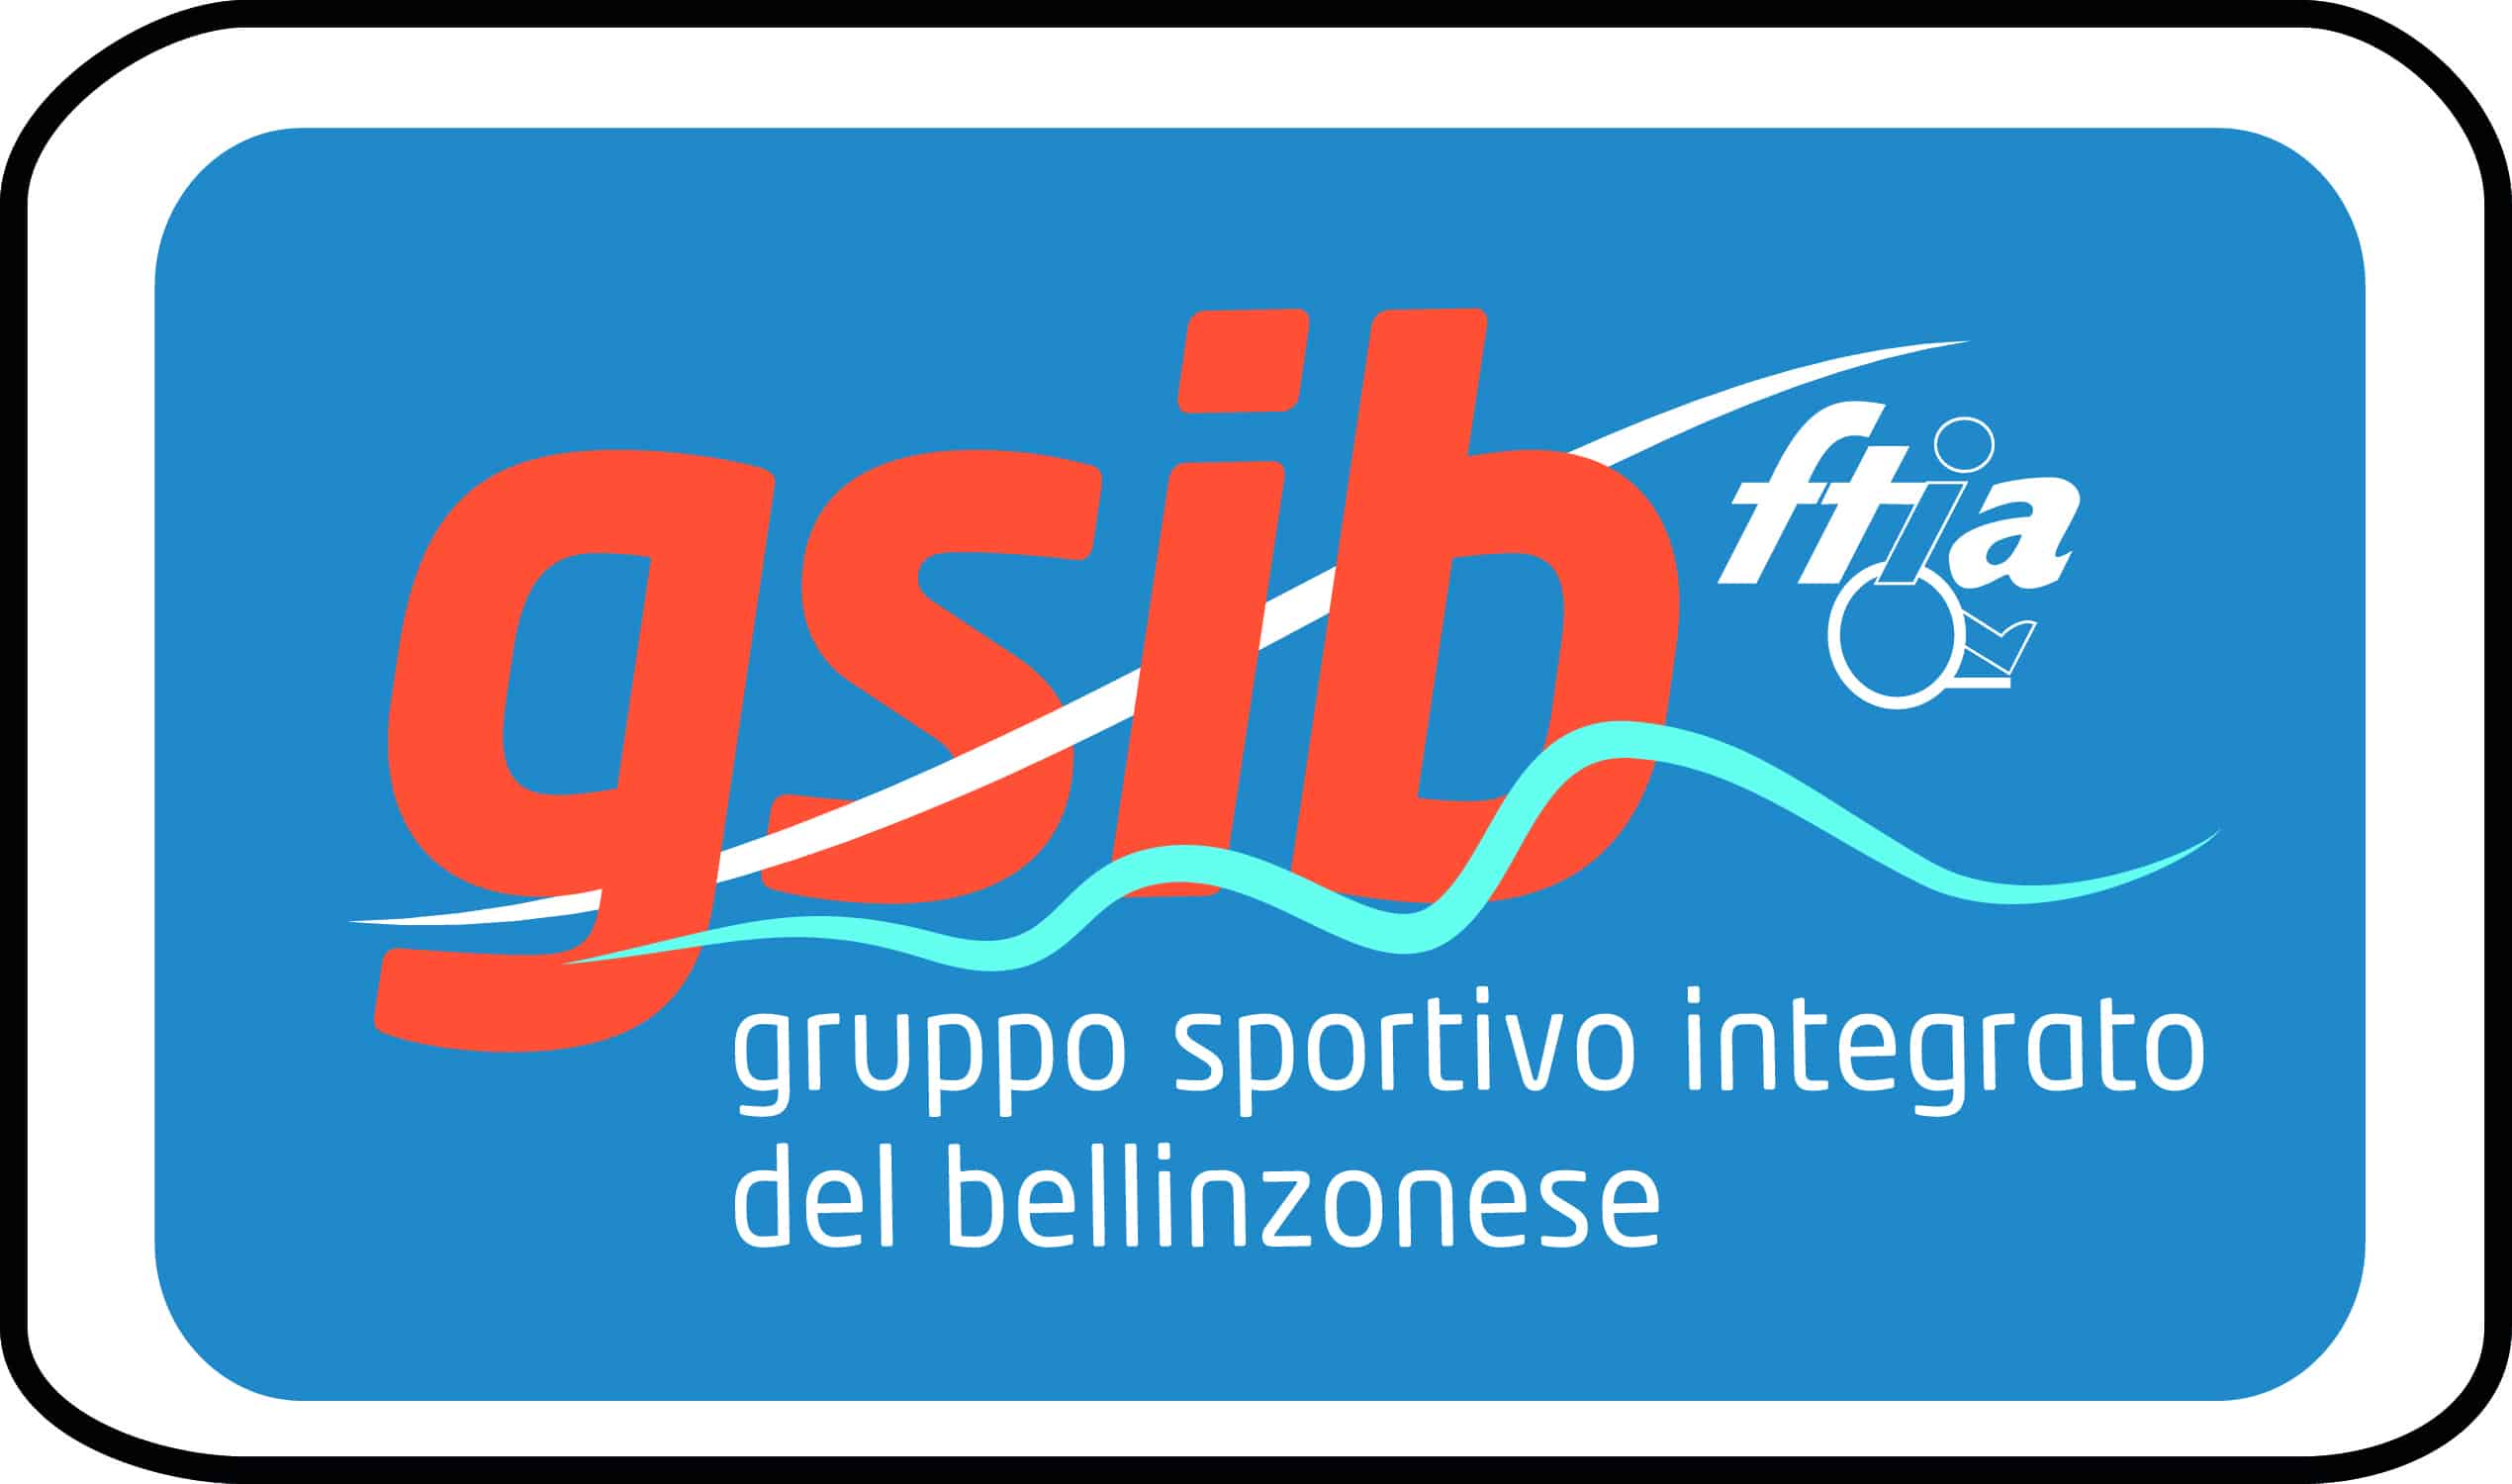 Gruppo sportivo integrato del bellinzonese GSIB logo